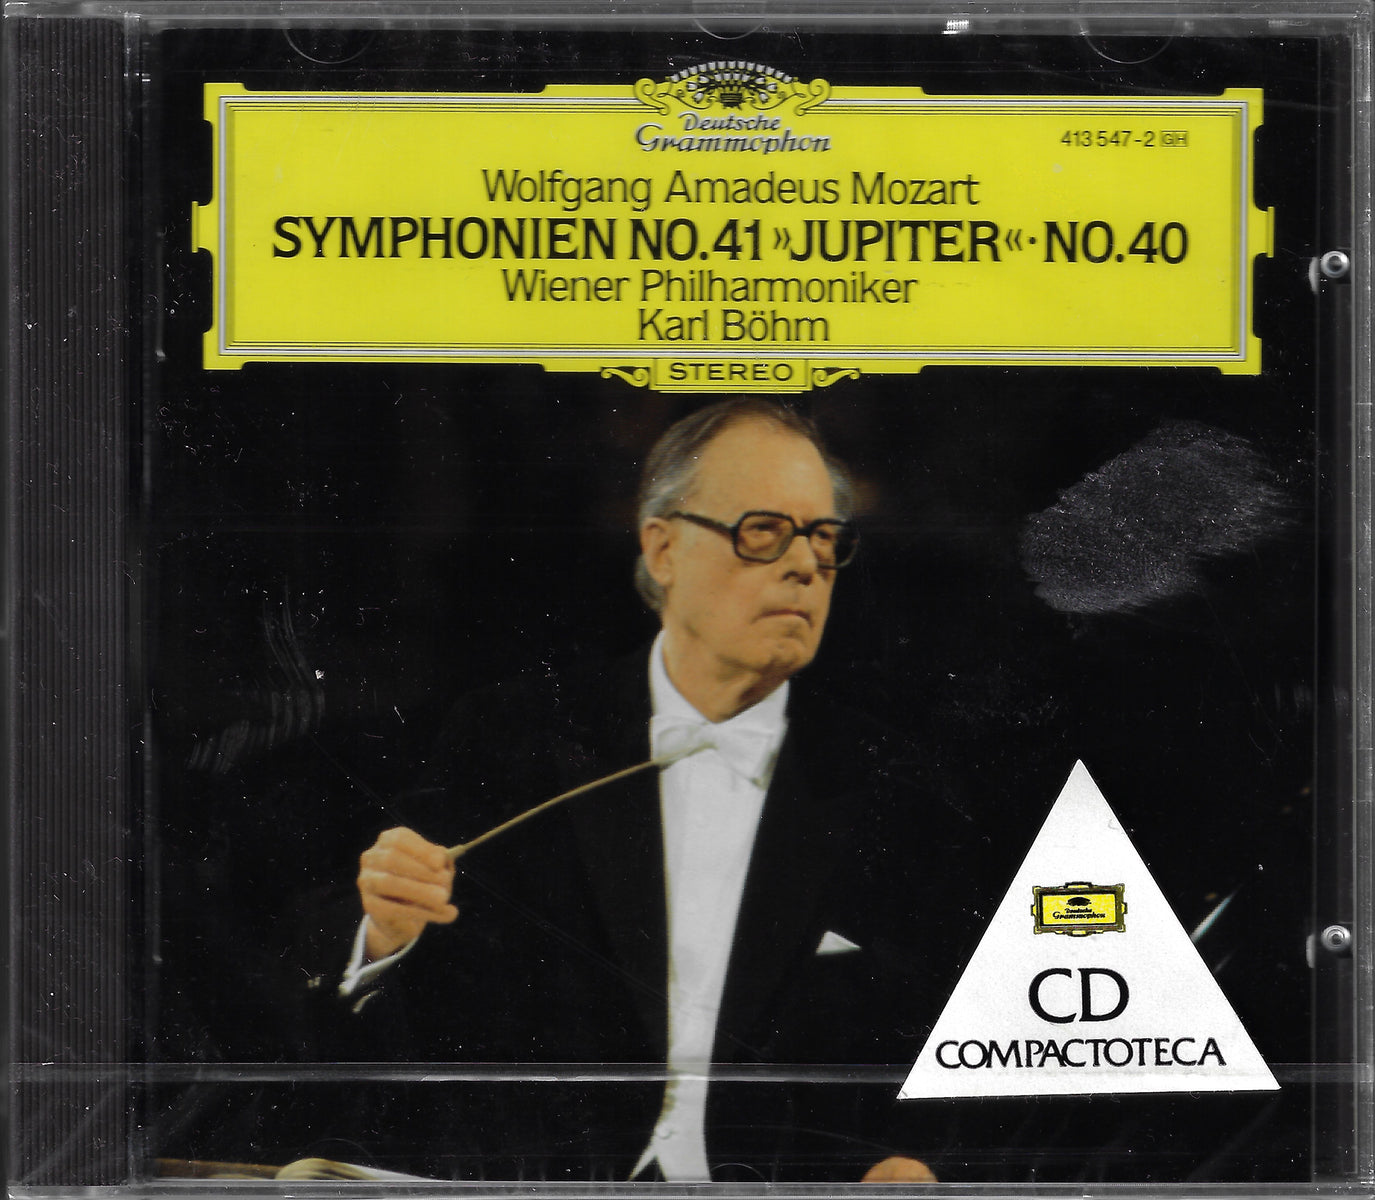 Bohm/VPO: Mozart Symphonies 40 & 41 - DG 413 547-2 (sealed) - Casals  Classical LPs & CDs